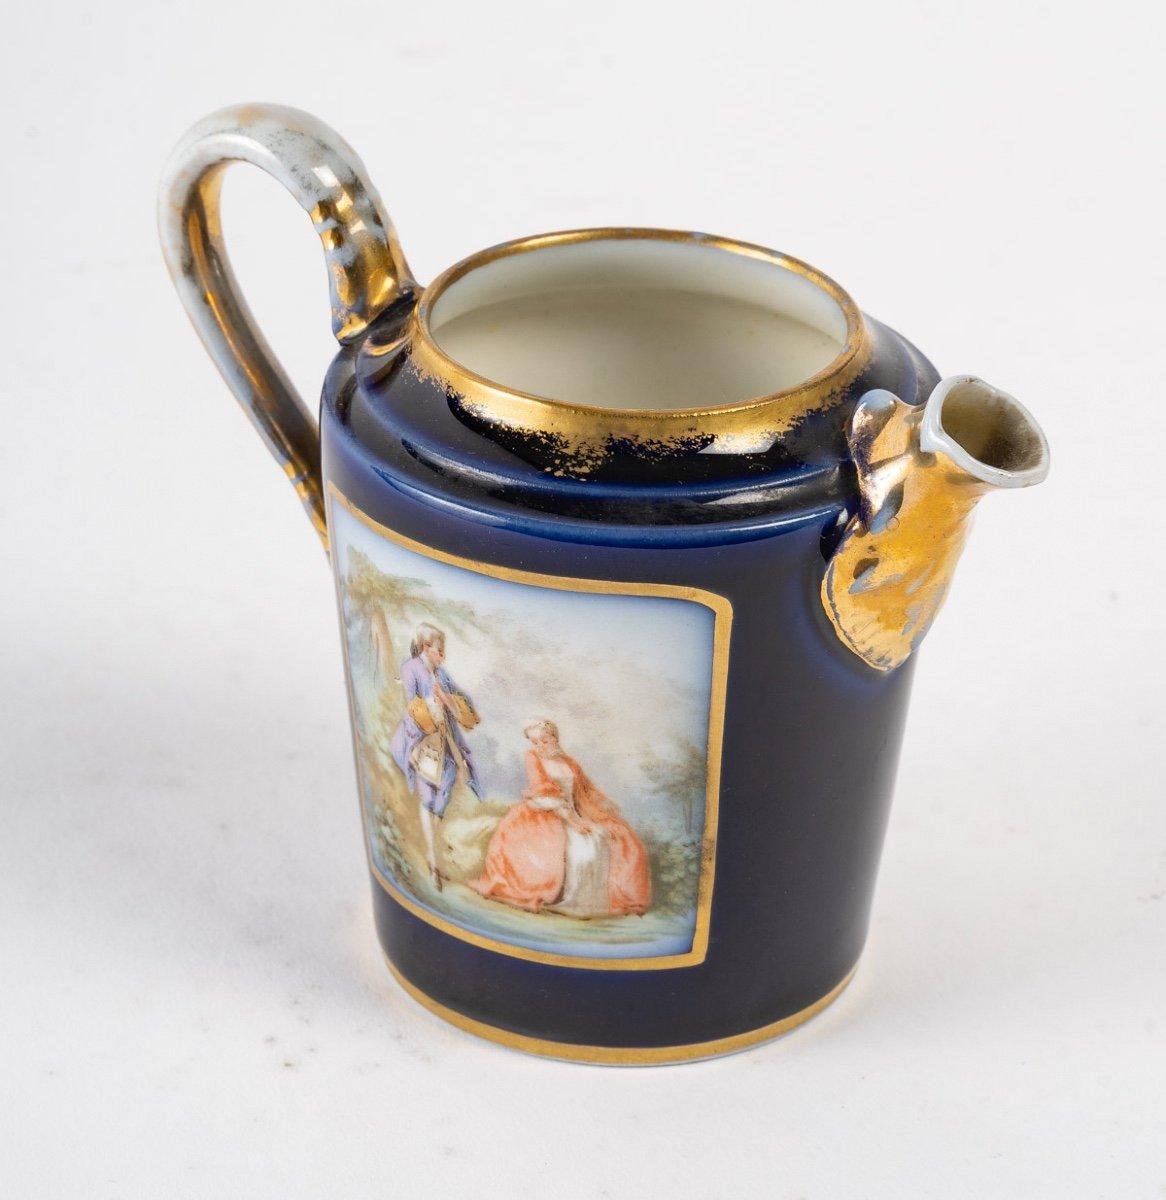 Porcelain coffee service in the Sèvres taste
Late 19th century.
Measures: H: 16 cm, W: 46 cm, D: 33 cm.